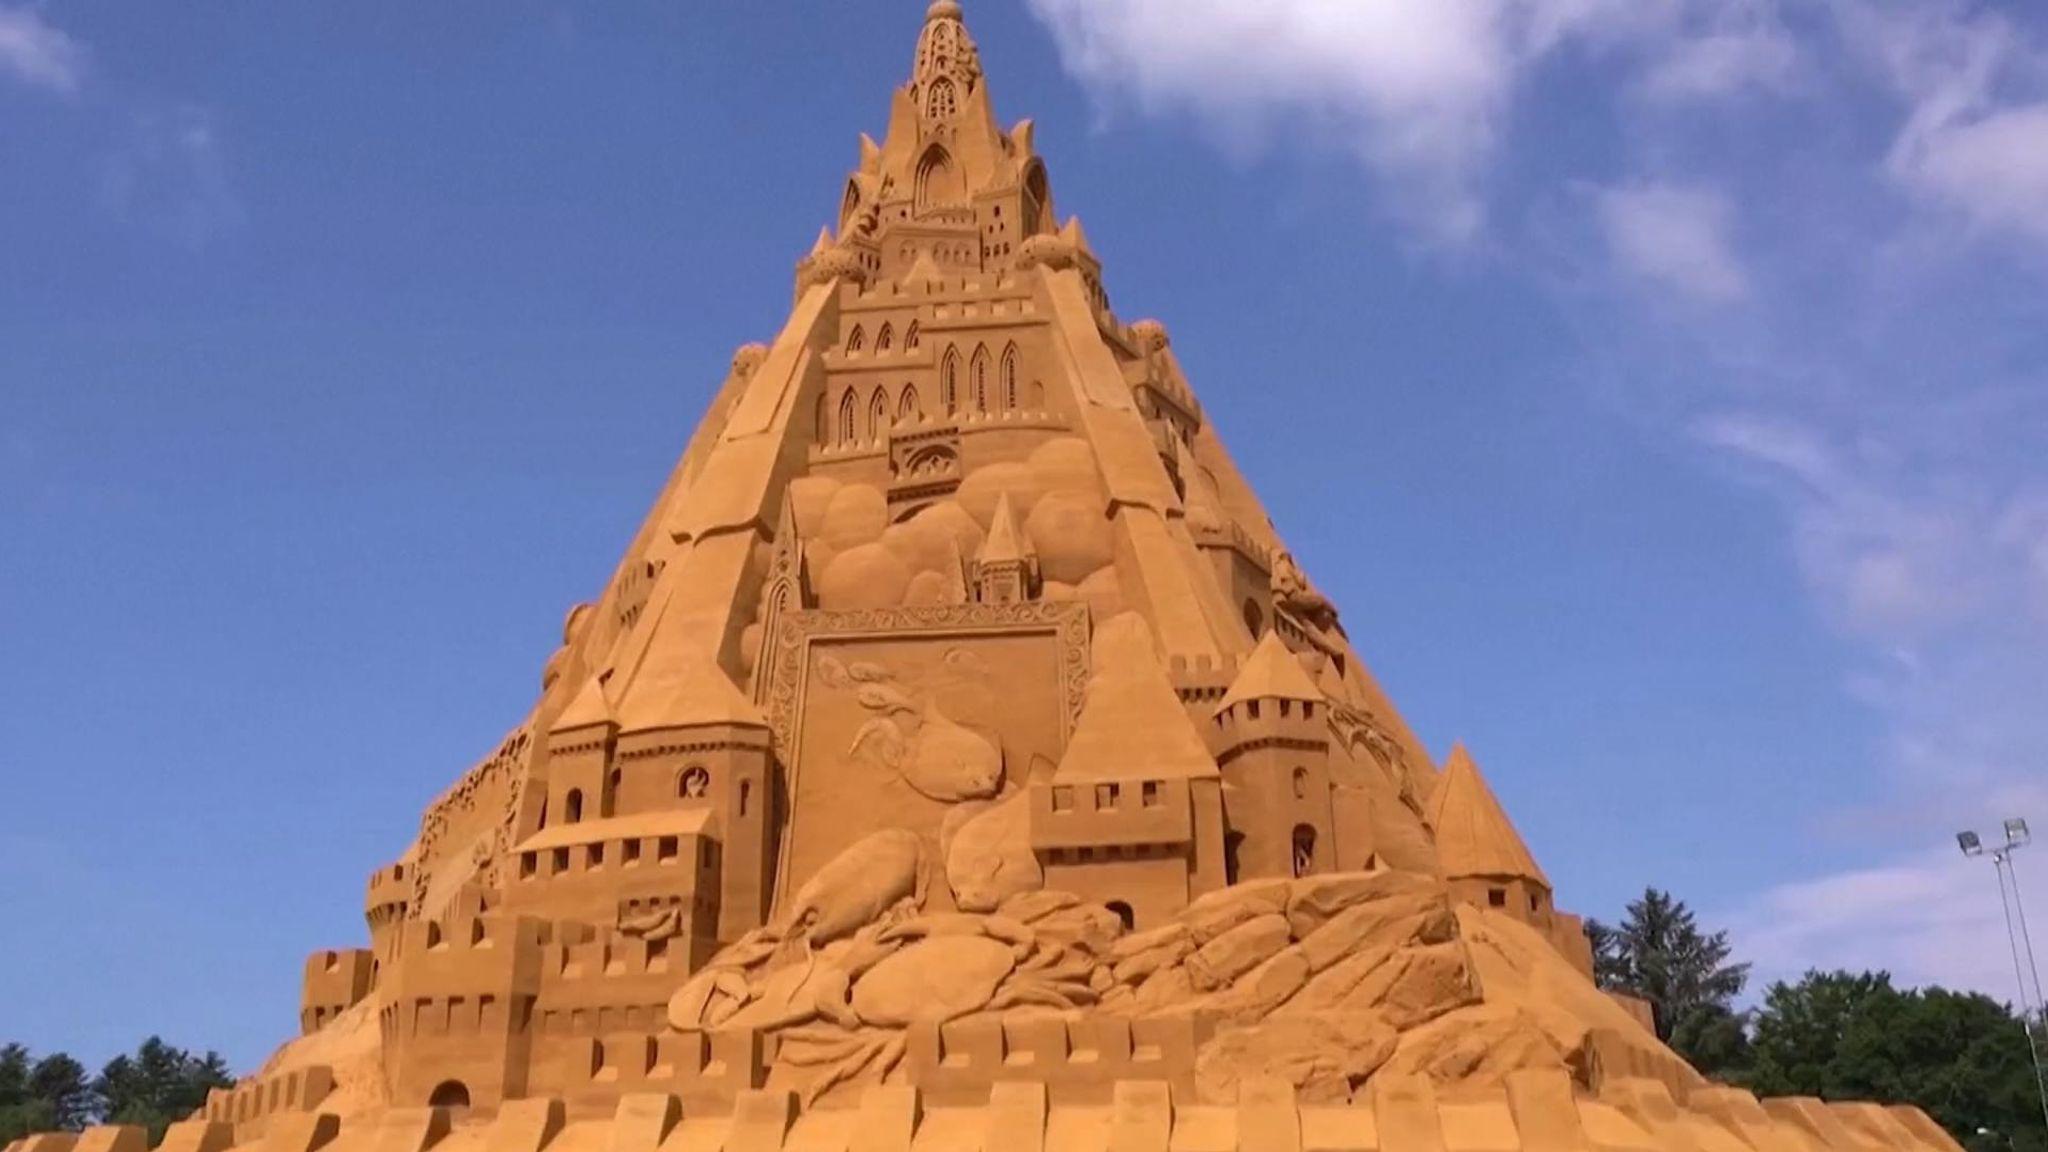 World's tallest sandcastle constructed in Denmark_50.1